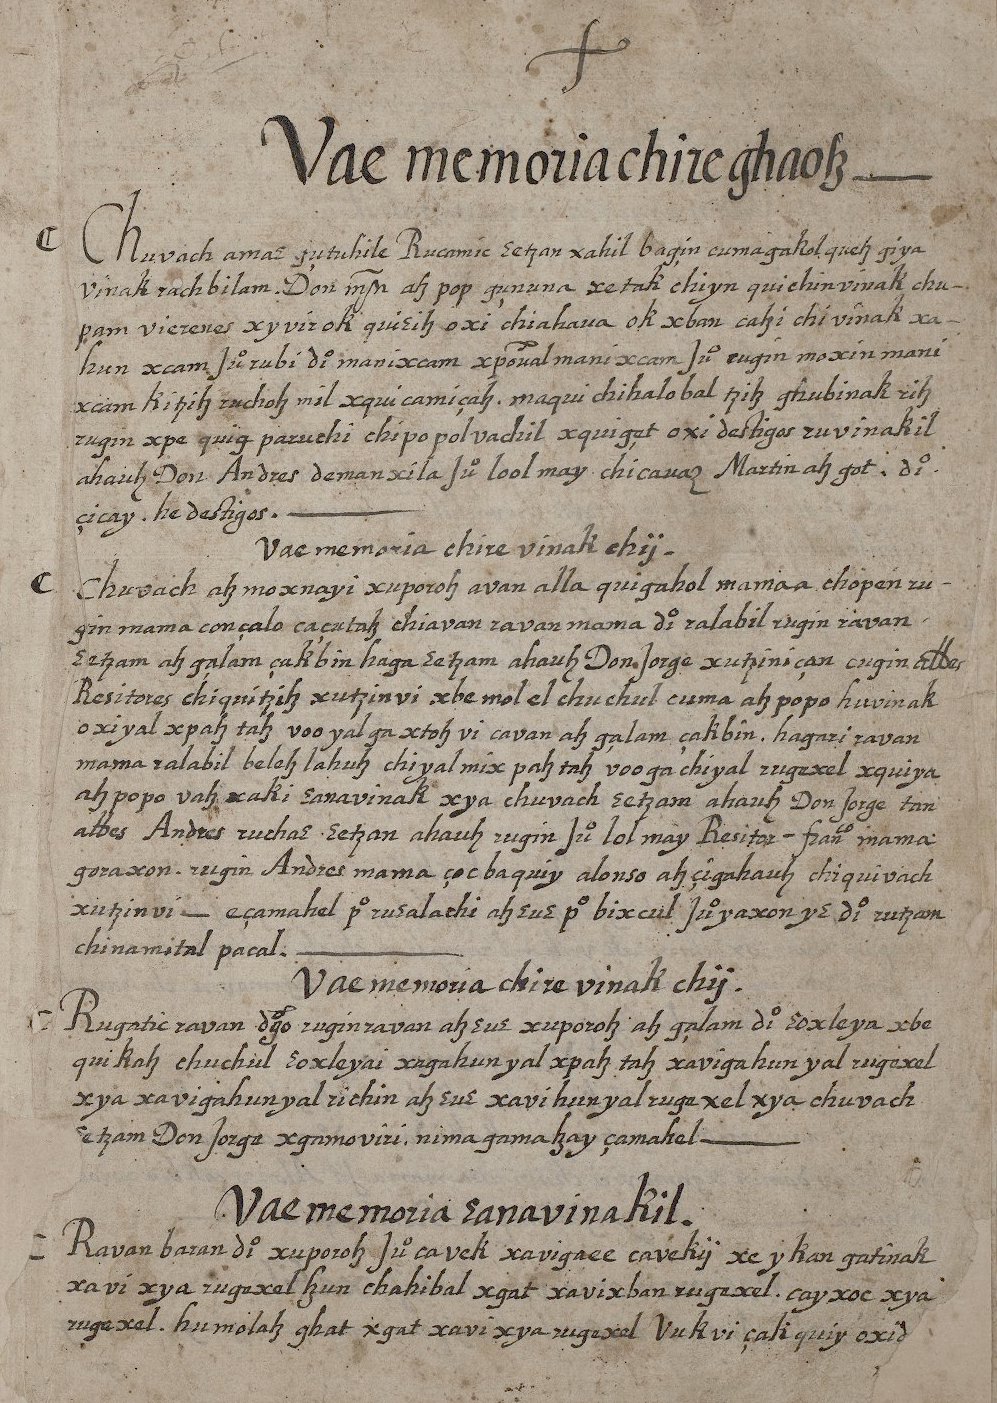 Manuscrito cakchiquel ó sea memorial de Tecpan-Atitlan (Solola) (Ms. Coll. 700, item 221), p.1